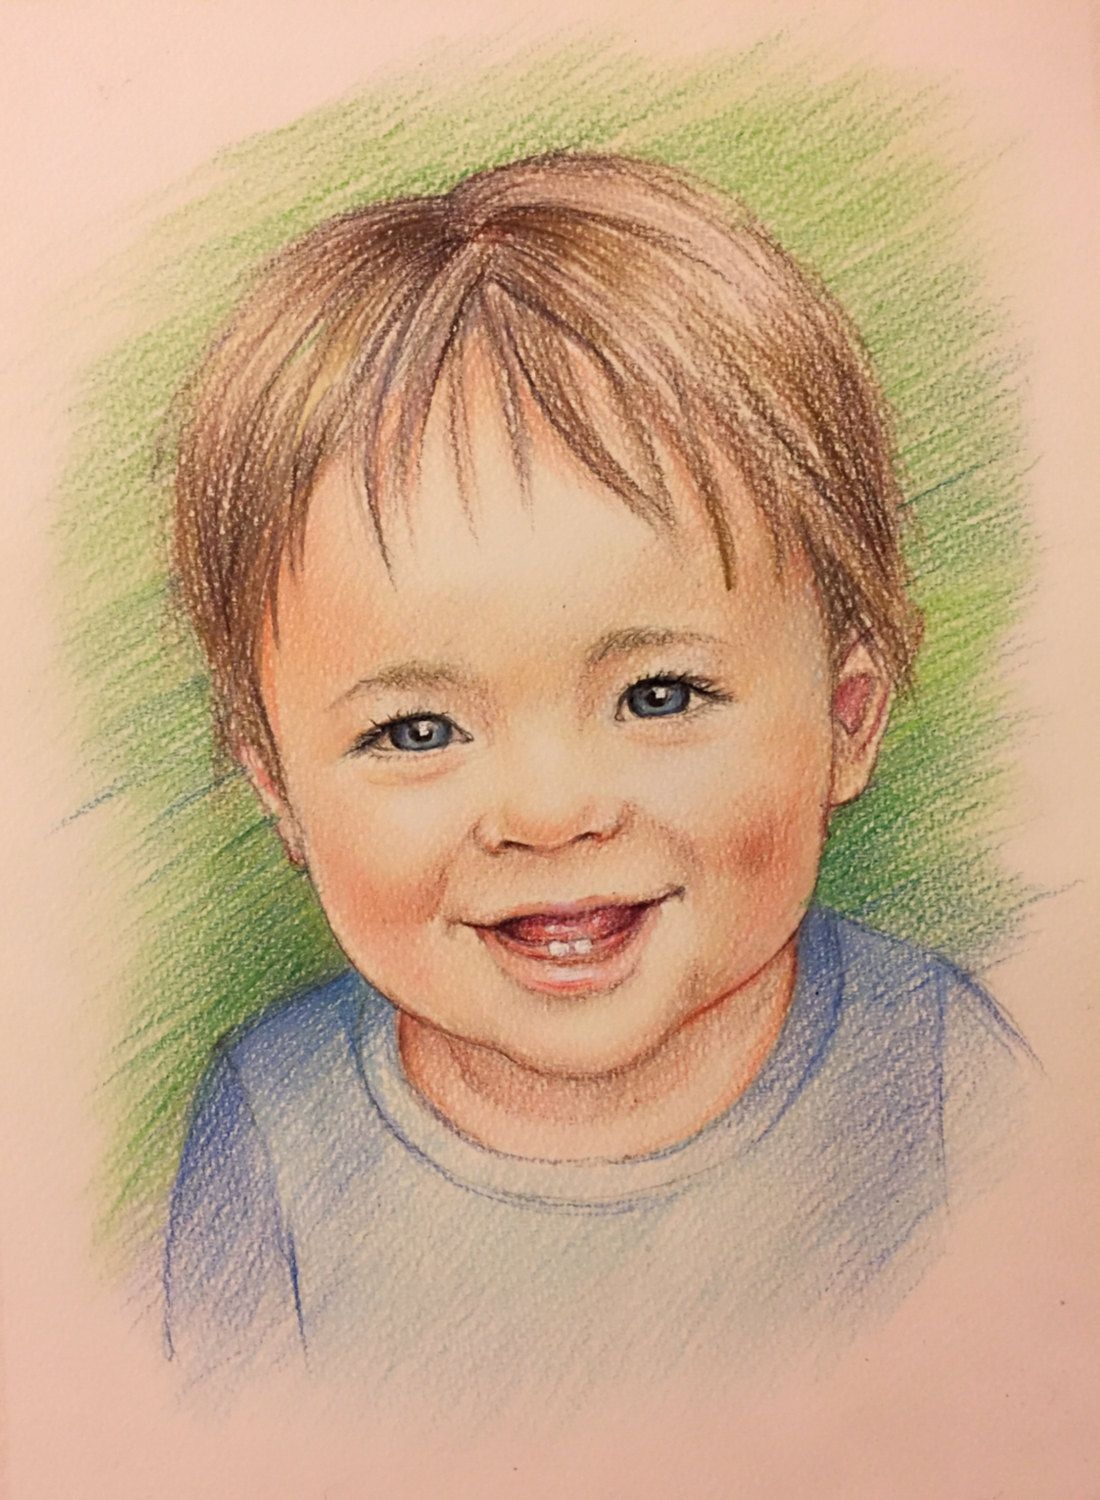 Портрет человека ребенку. Портрет рисунок. Портрет мальчика. Детский портрет карандашом. Портрет ребенка карандашом.